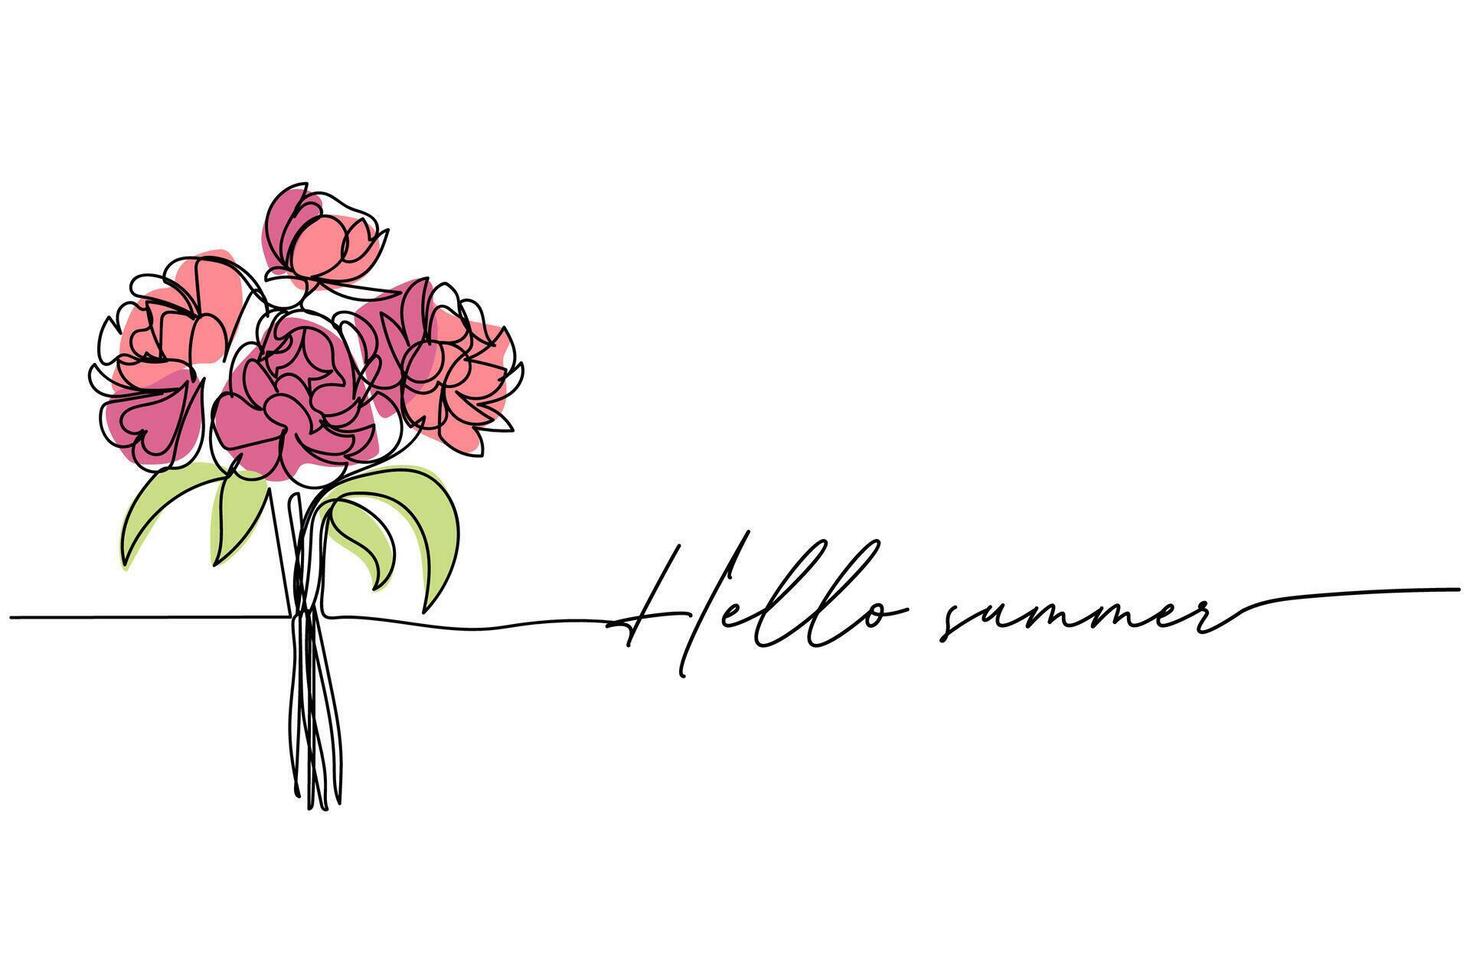 Hallo zomer, boeket van pioen bloemen lijn kunst tekening, een doorlopend lijn tekening en tekst. voor ansichtkaart ontwerp vector